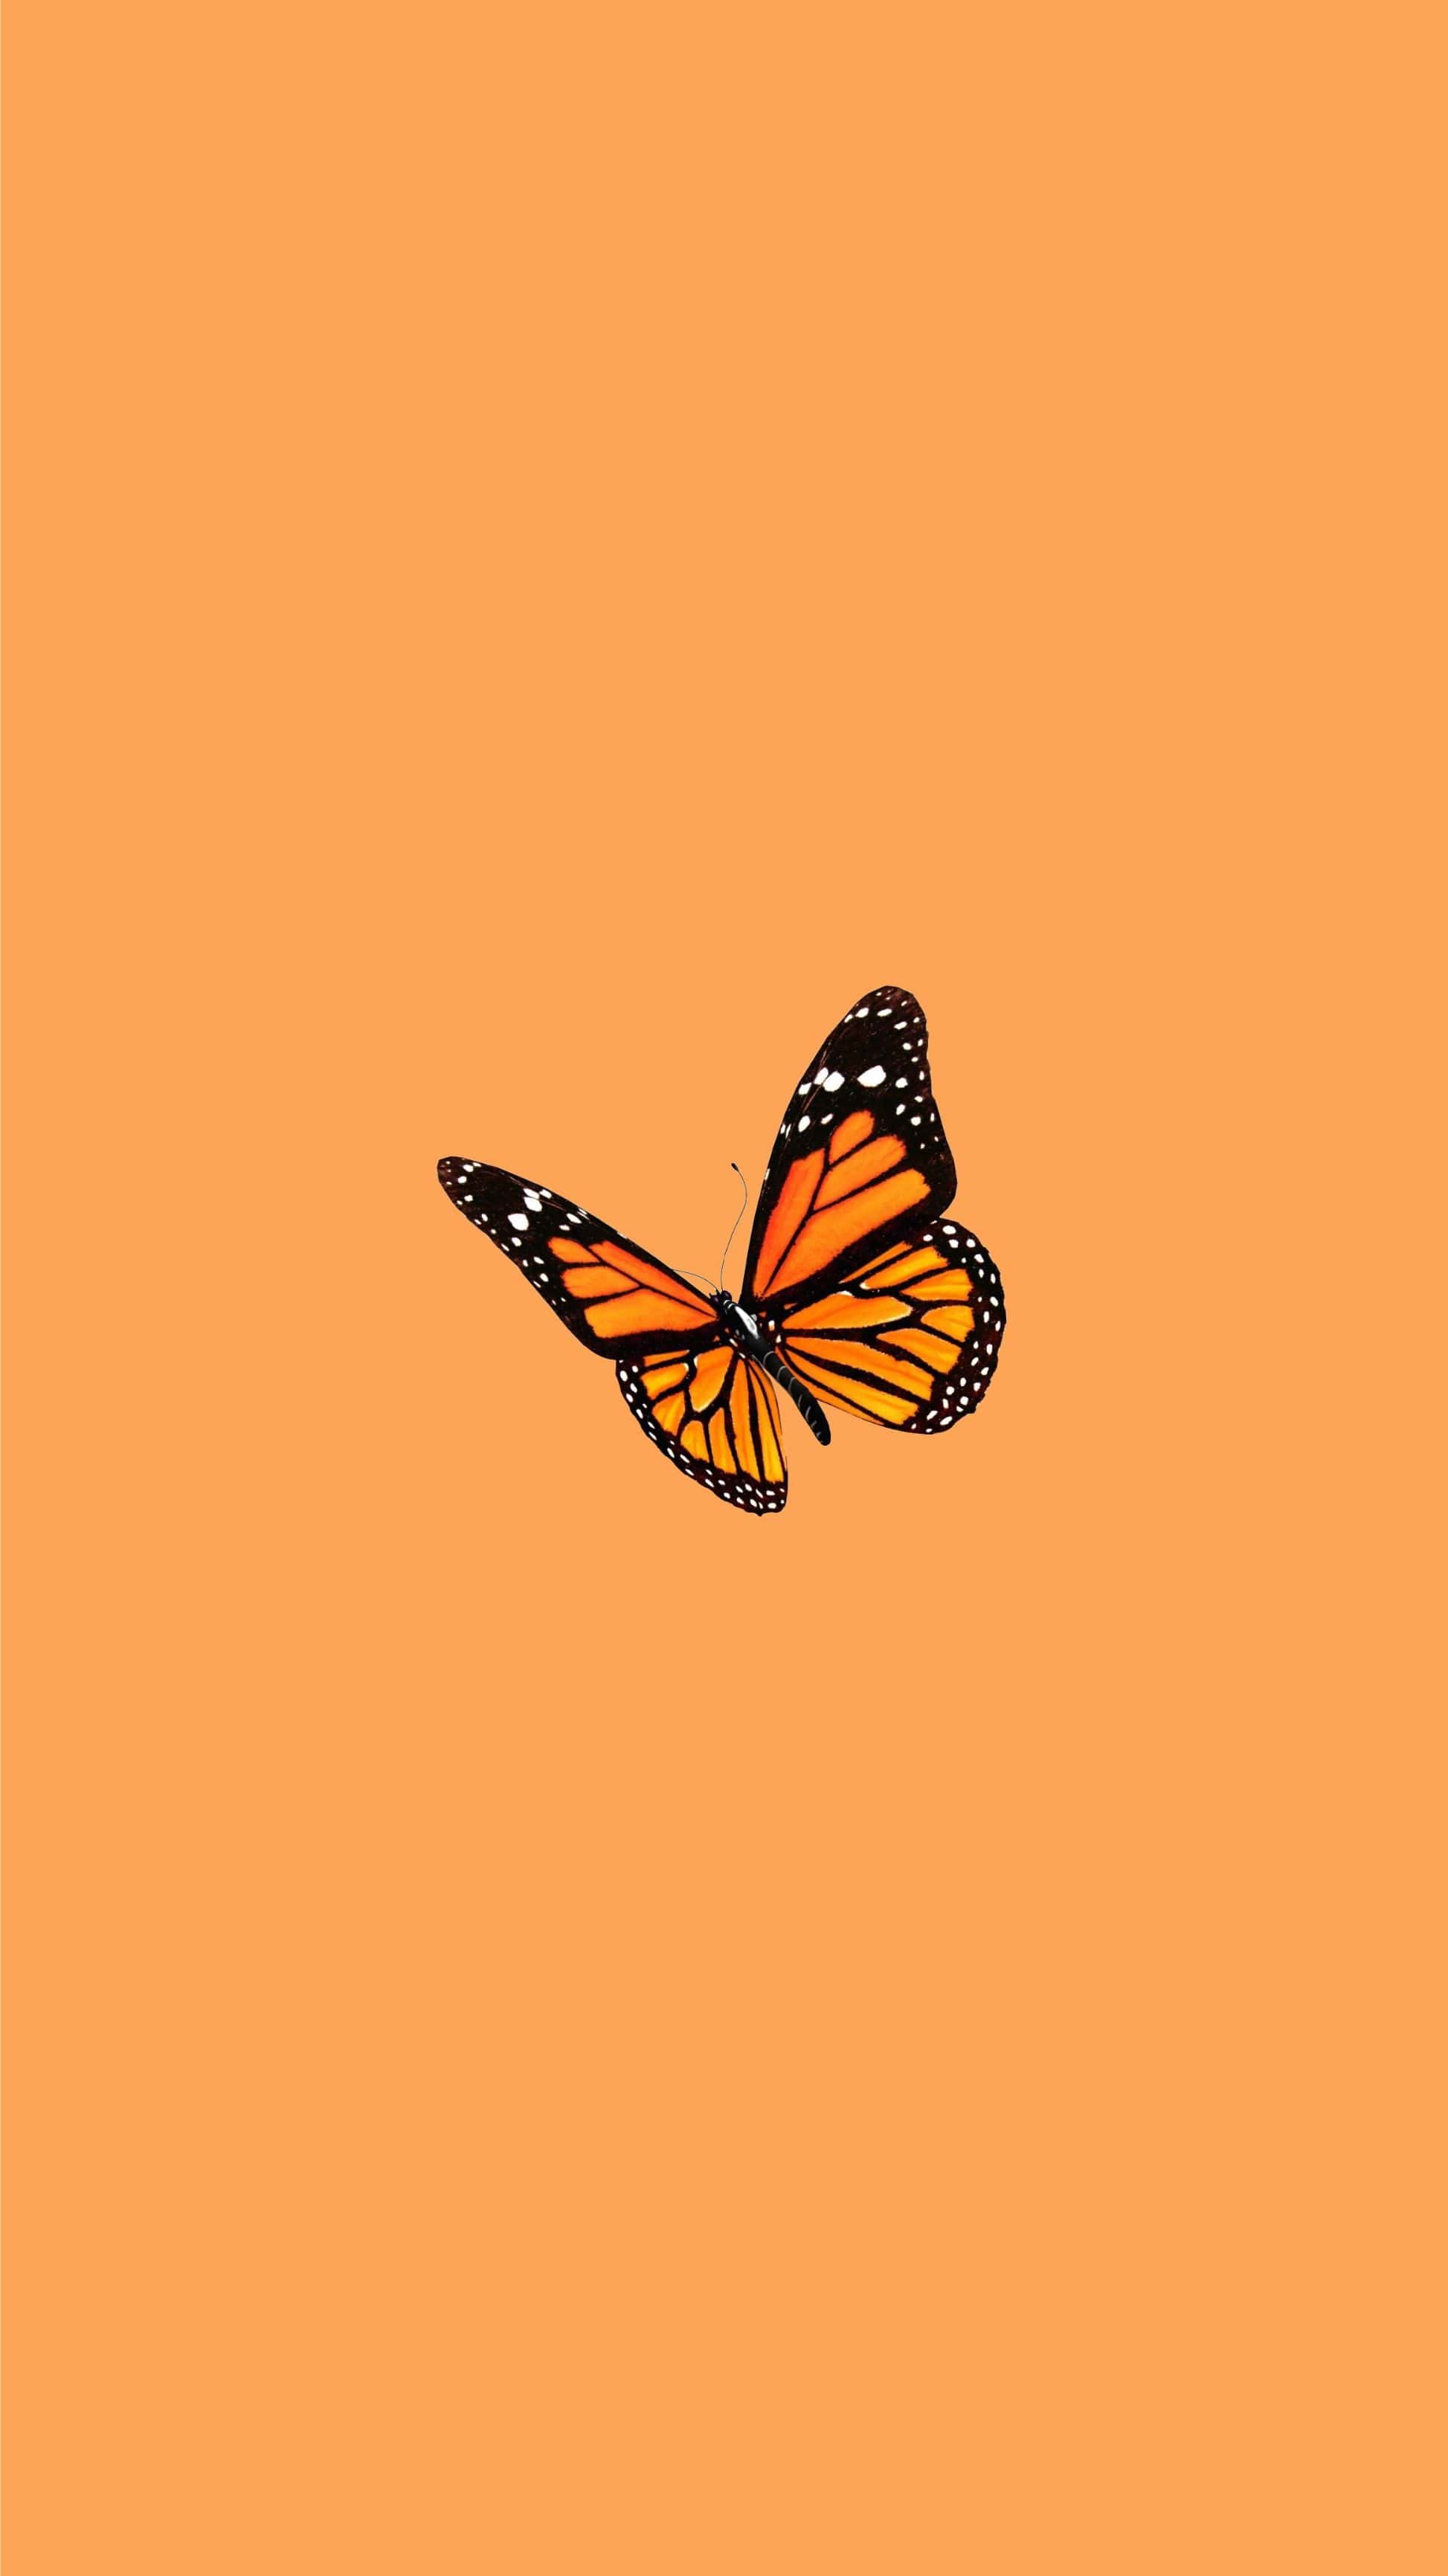 An orange butterfly on an orange background - Orange, butterfly